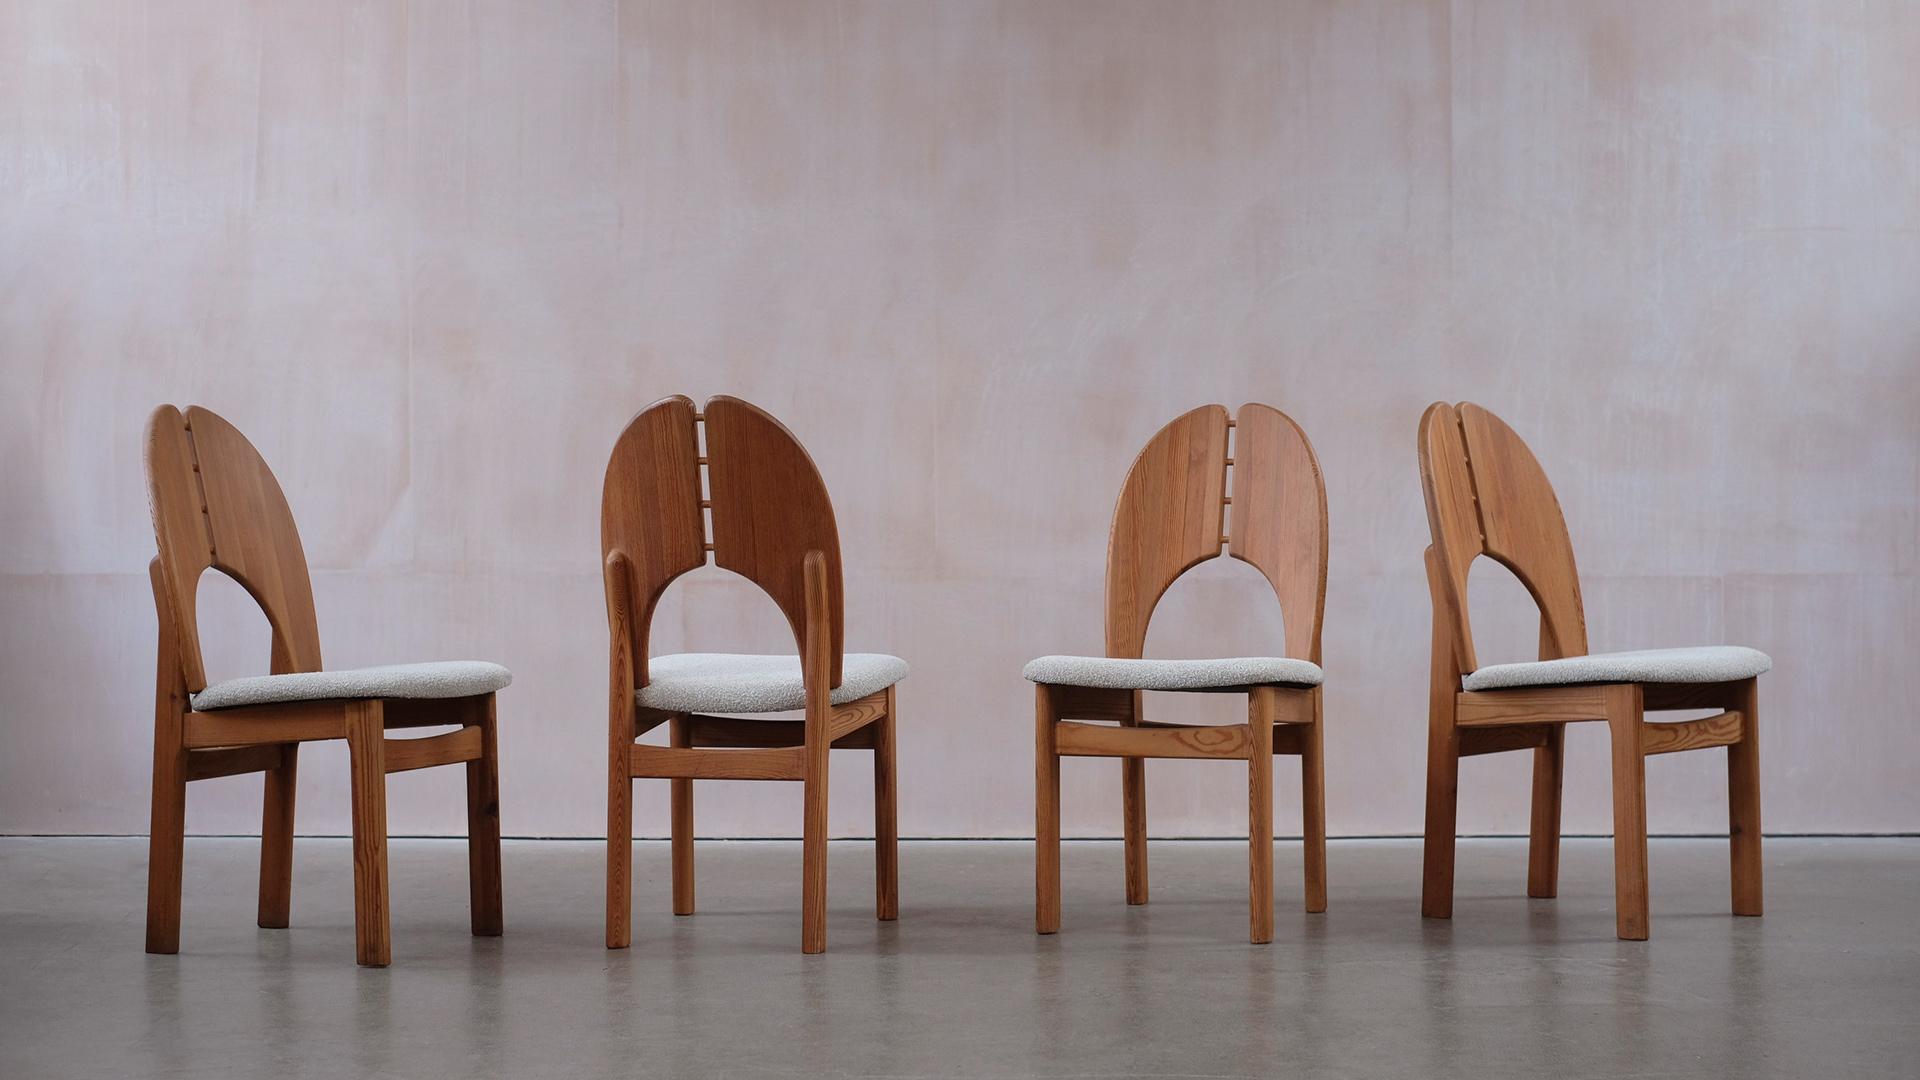 Wunderbares Set schwedischer Stühle aus schönem Kiefernholz mit auffälliger Maserung und erstaunlicher Patina. Neu gepolstert mit einem Boucle von Kirkby Design. Super skulptural und von hoher Qualität. Die Stühle lassen sich keinem Designer oder